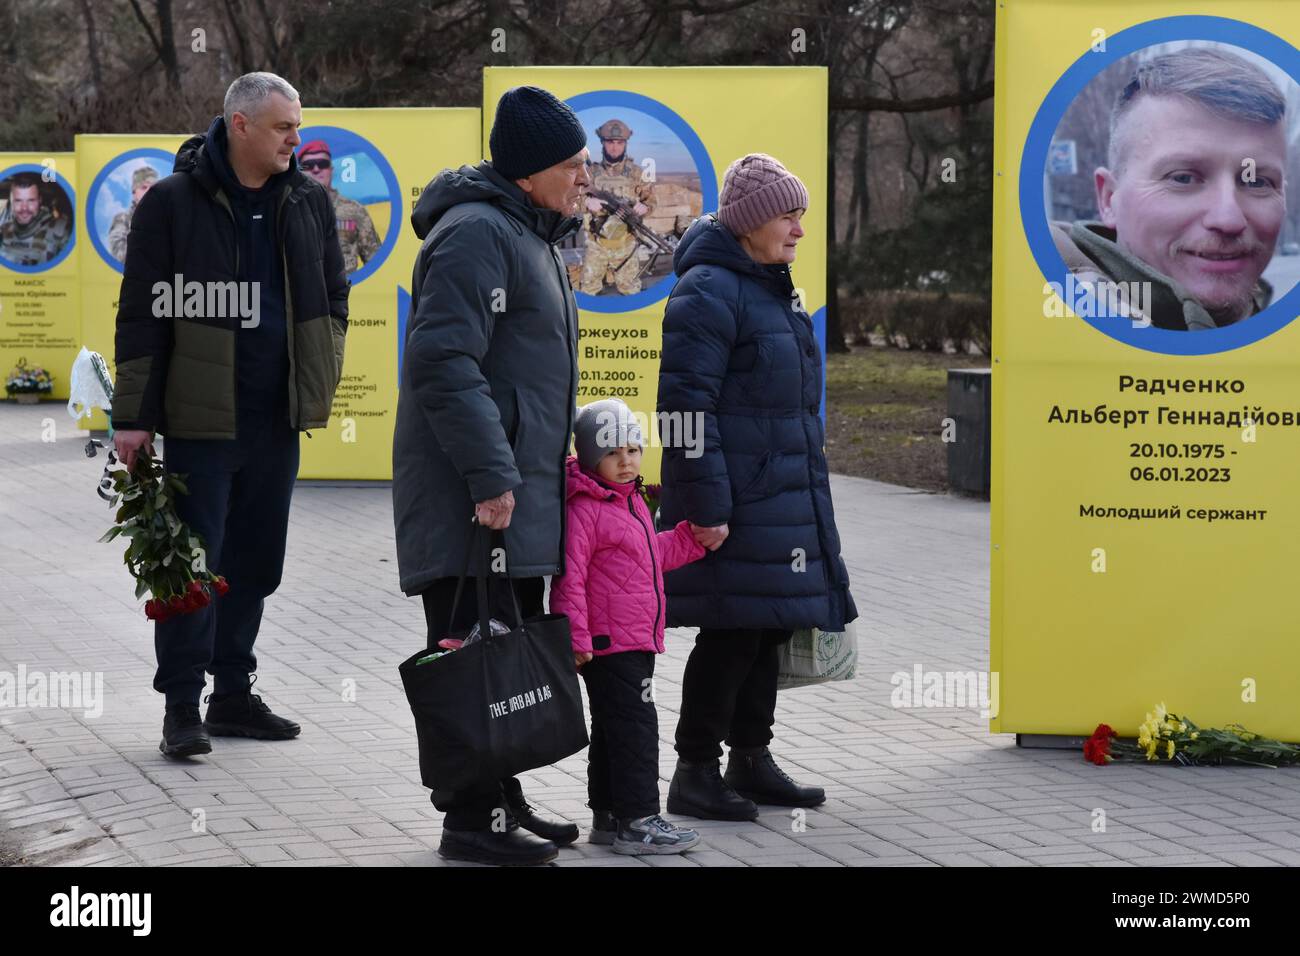 Parents et amis sont vus à côté des stands de portraits de soldats ukrainiens tombés au combat dans le centre de Zaporizhzhia. Le président ukrainien Volodymyr Zelensky a marqué le deuxième anniversaire de l'invasion russe en déclarant que son pays "réussira". L'Ukraine a défié les prédictions de combattre la Russie, mais il y a des signes que la guerre tourne en faveur de la Russie. Le gouvernement ukrainien a cessé de partager le nombre de ses militaires morts il y a longtemps. Mais le nombre toujours croissant de tombes fraîches, des deux côtés des lignes de front, dresse un tableau douloureusement clair. Banque D'Images